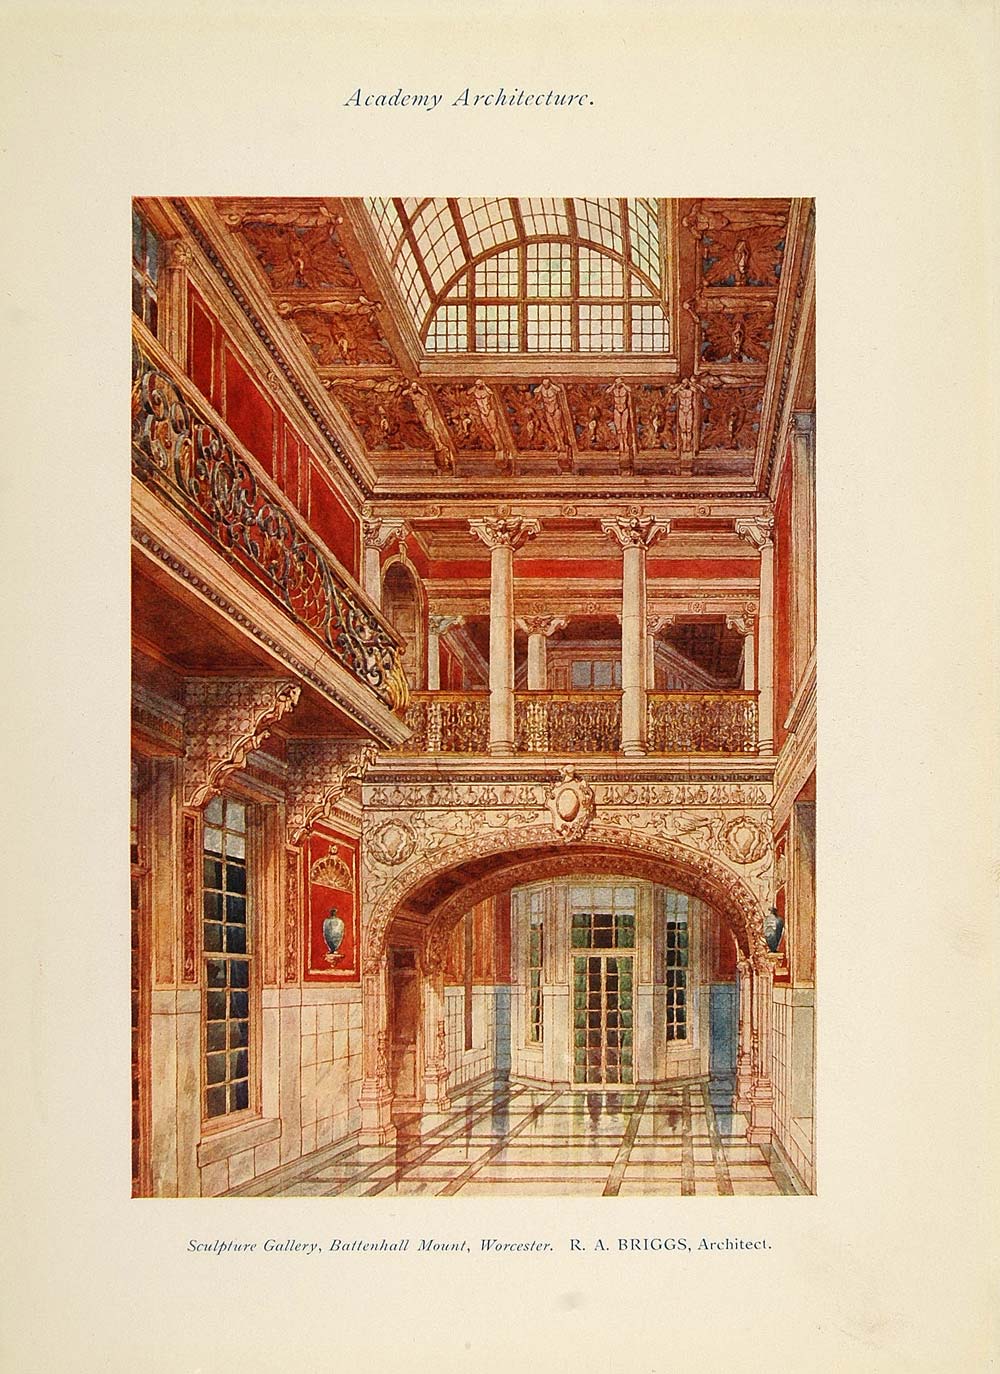 1913 Battenhall Mount Worcester Robert A. Briggs Print - ORIGINAL AD1